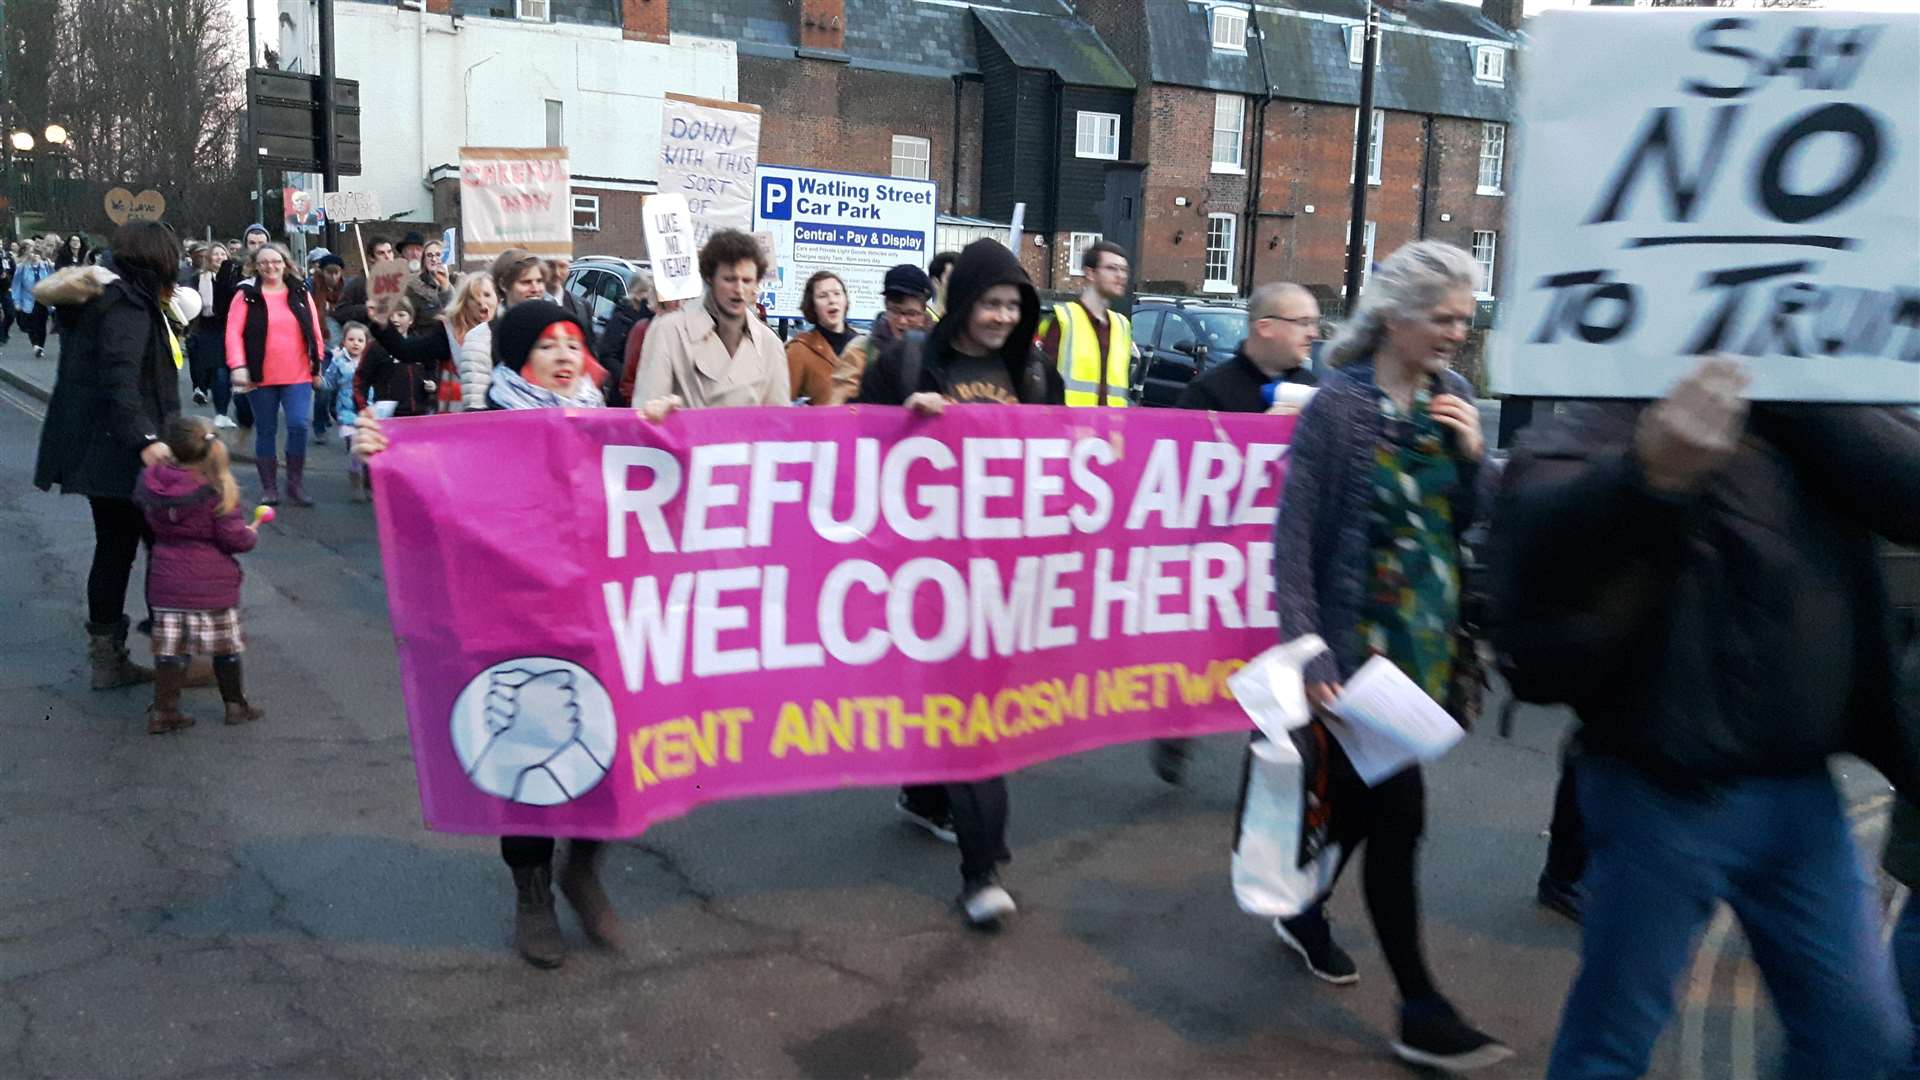 Protestors march through Canterbury